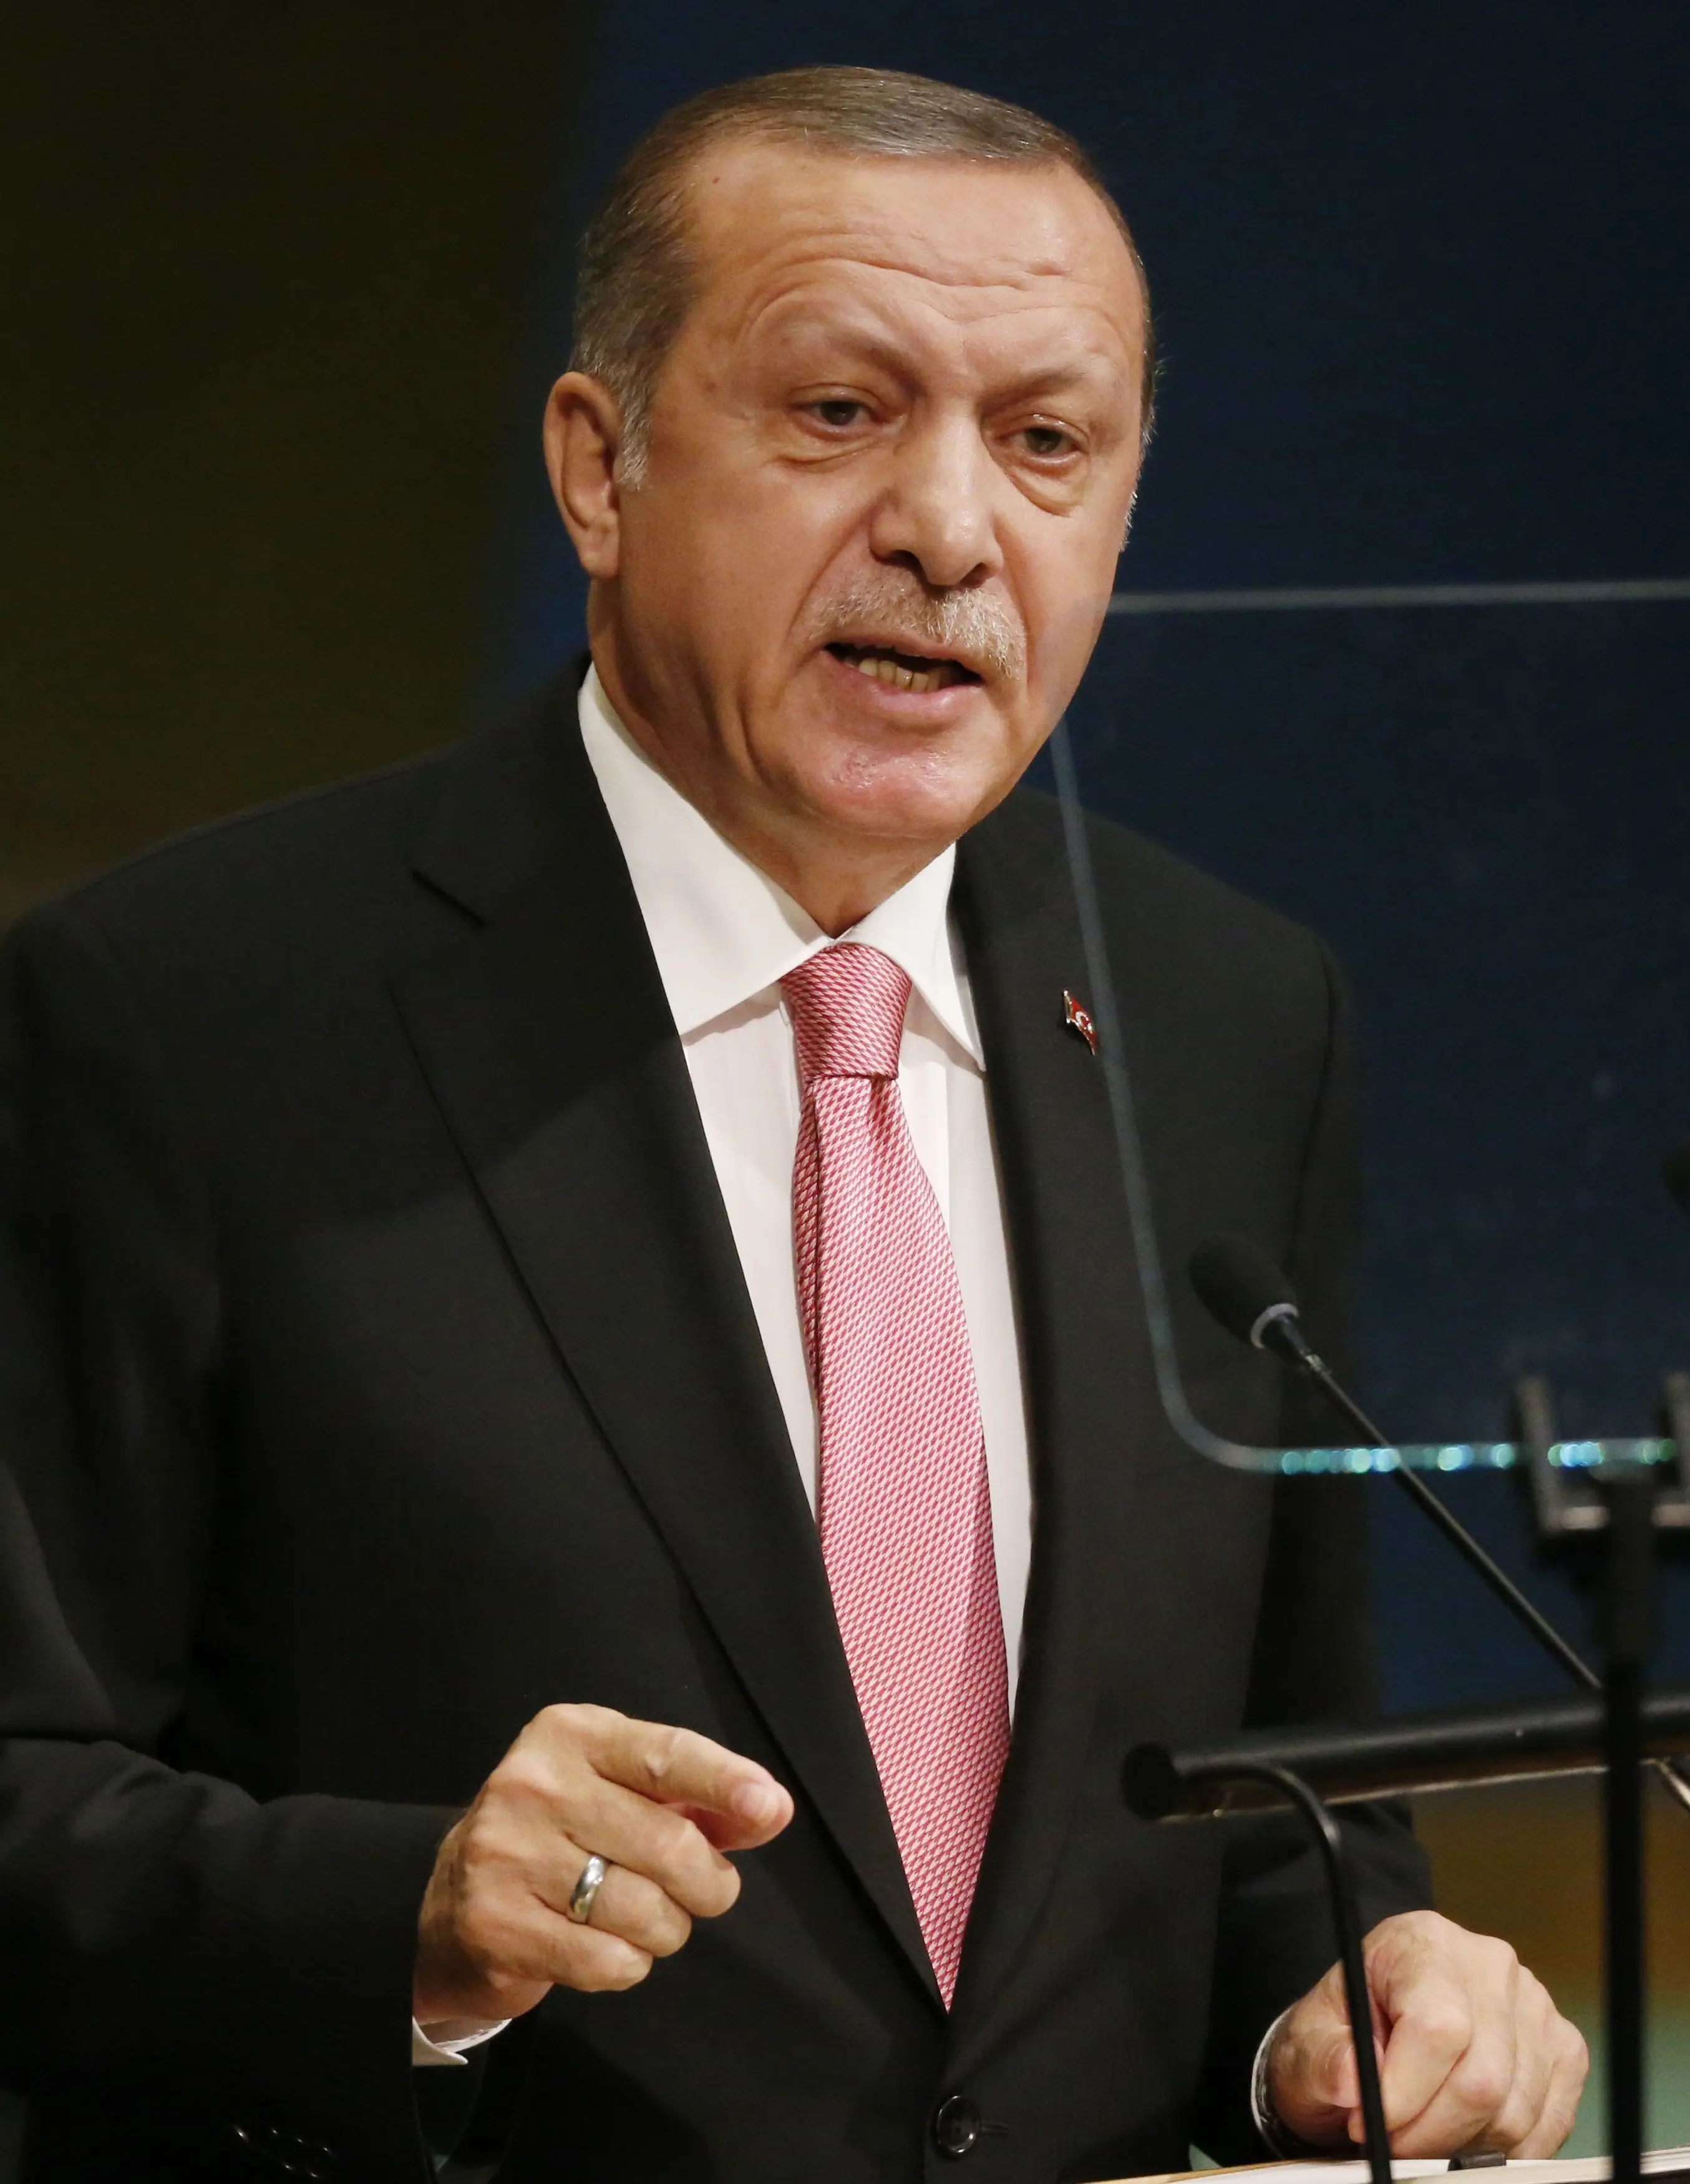 נשיא טורקיה ארדואן